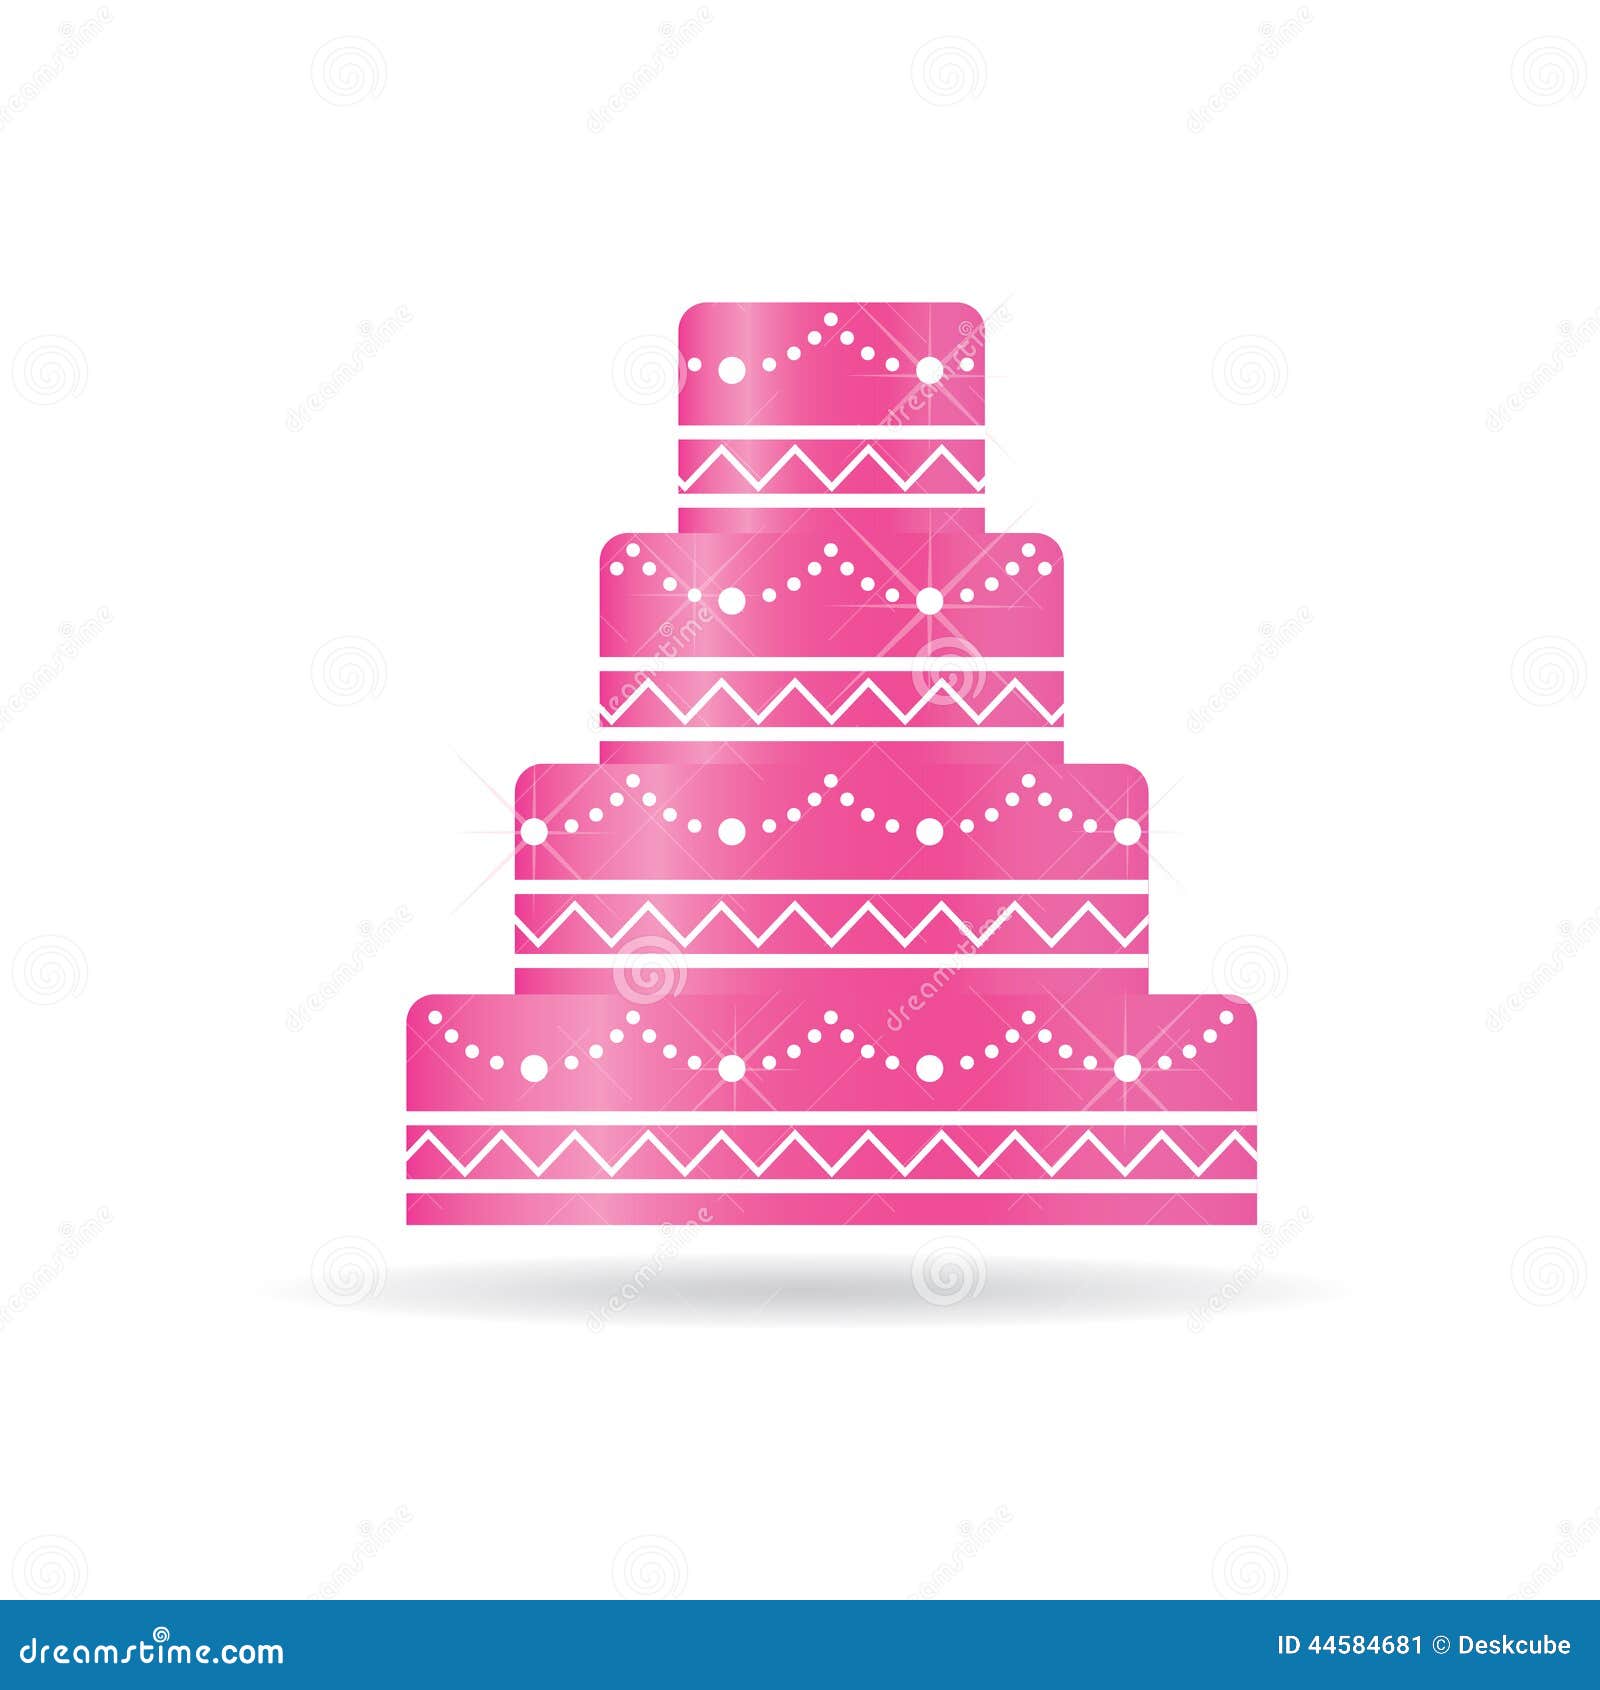 Pink Wedding Cake Logo Illustration 44584681 Megapixl